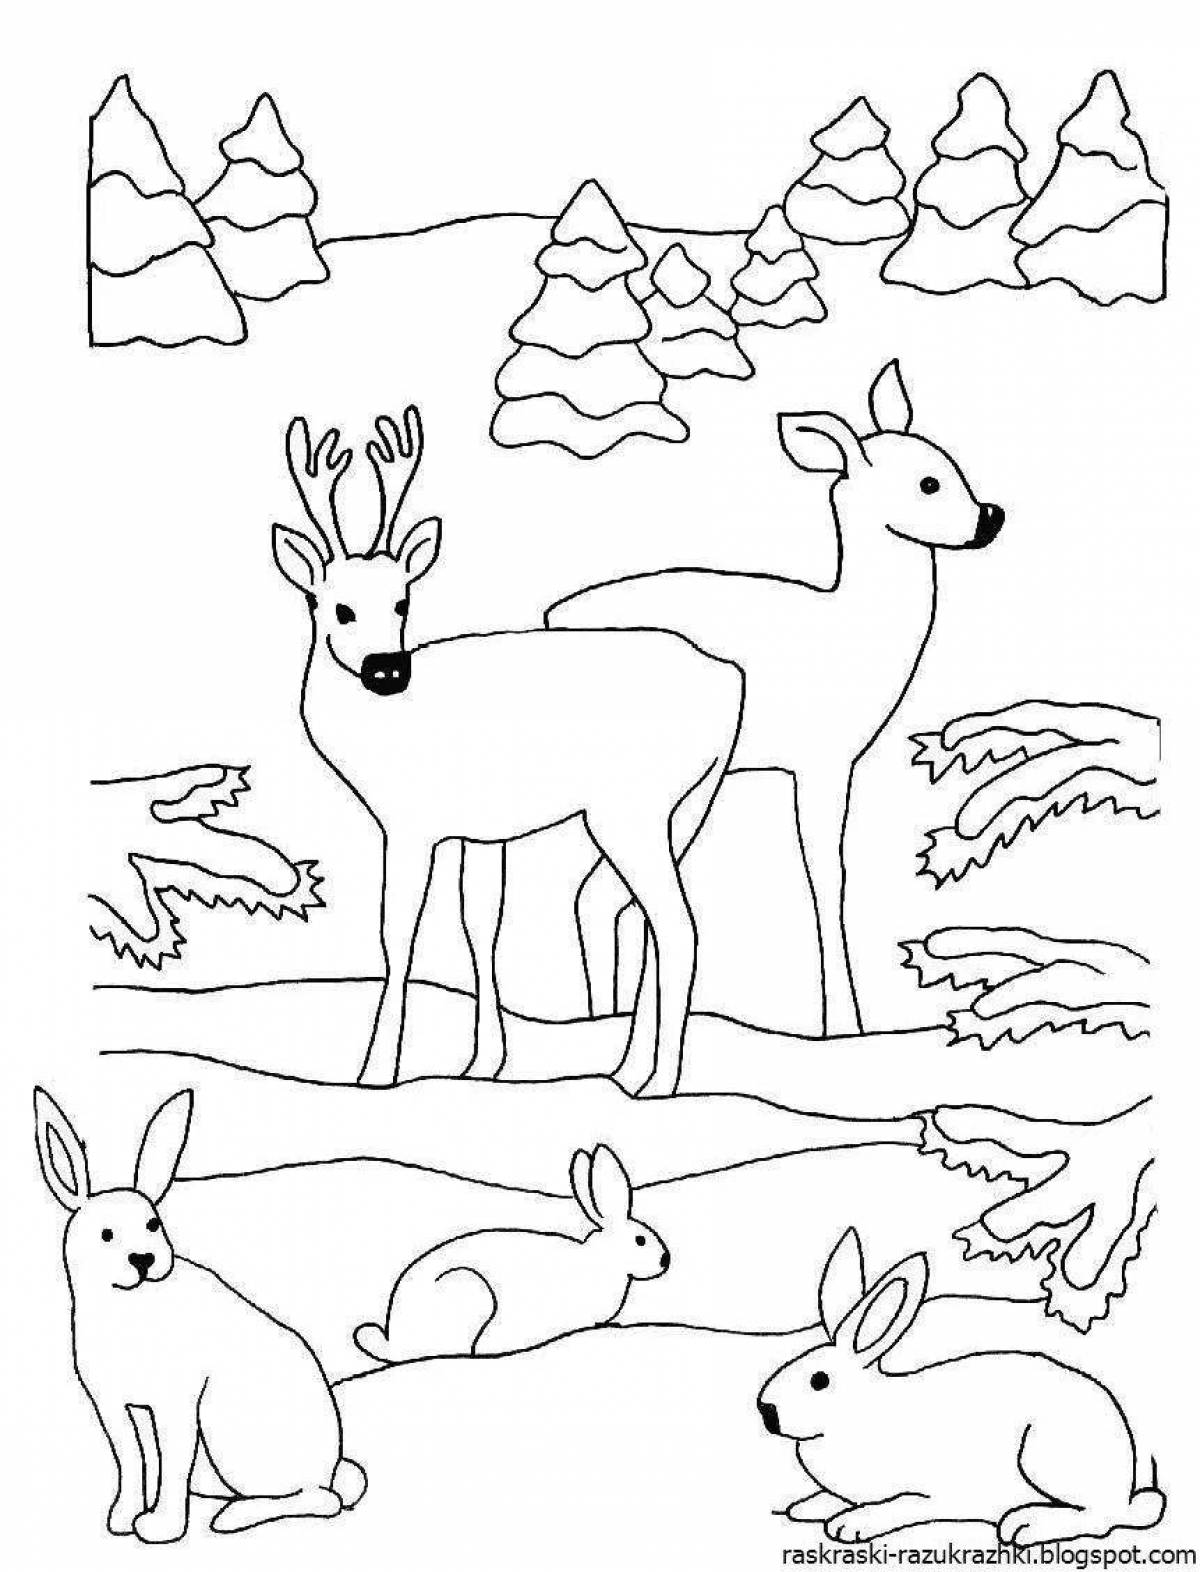 Веселая раскраска зимних животных для детей